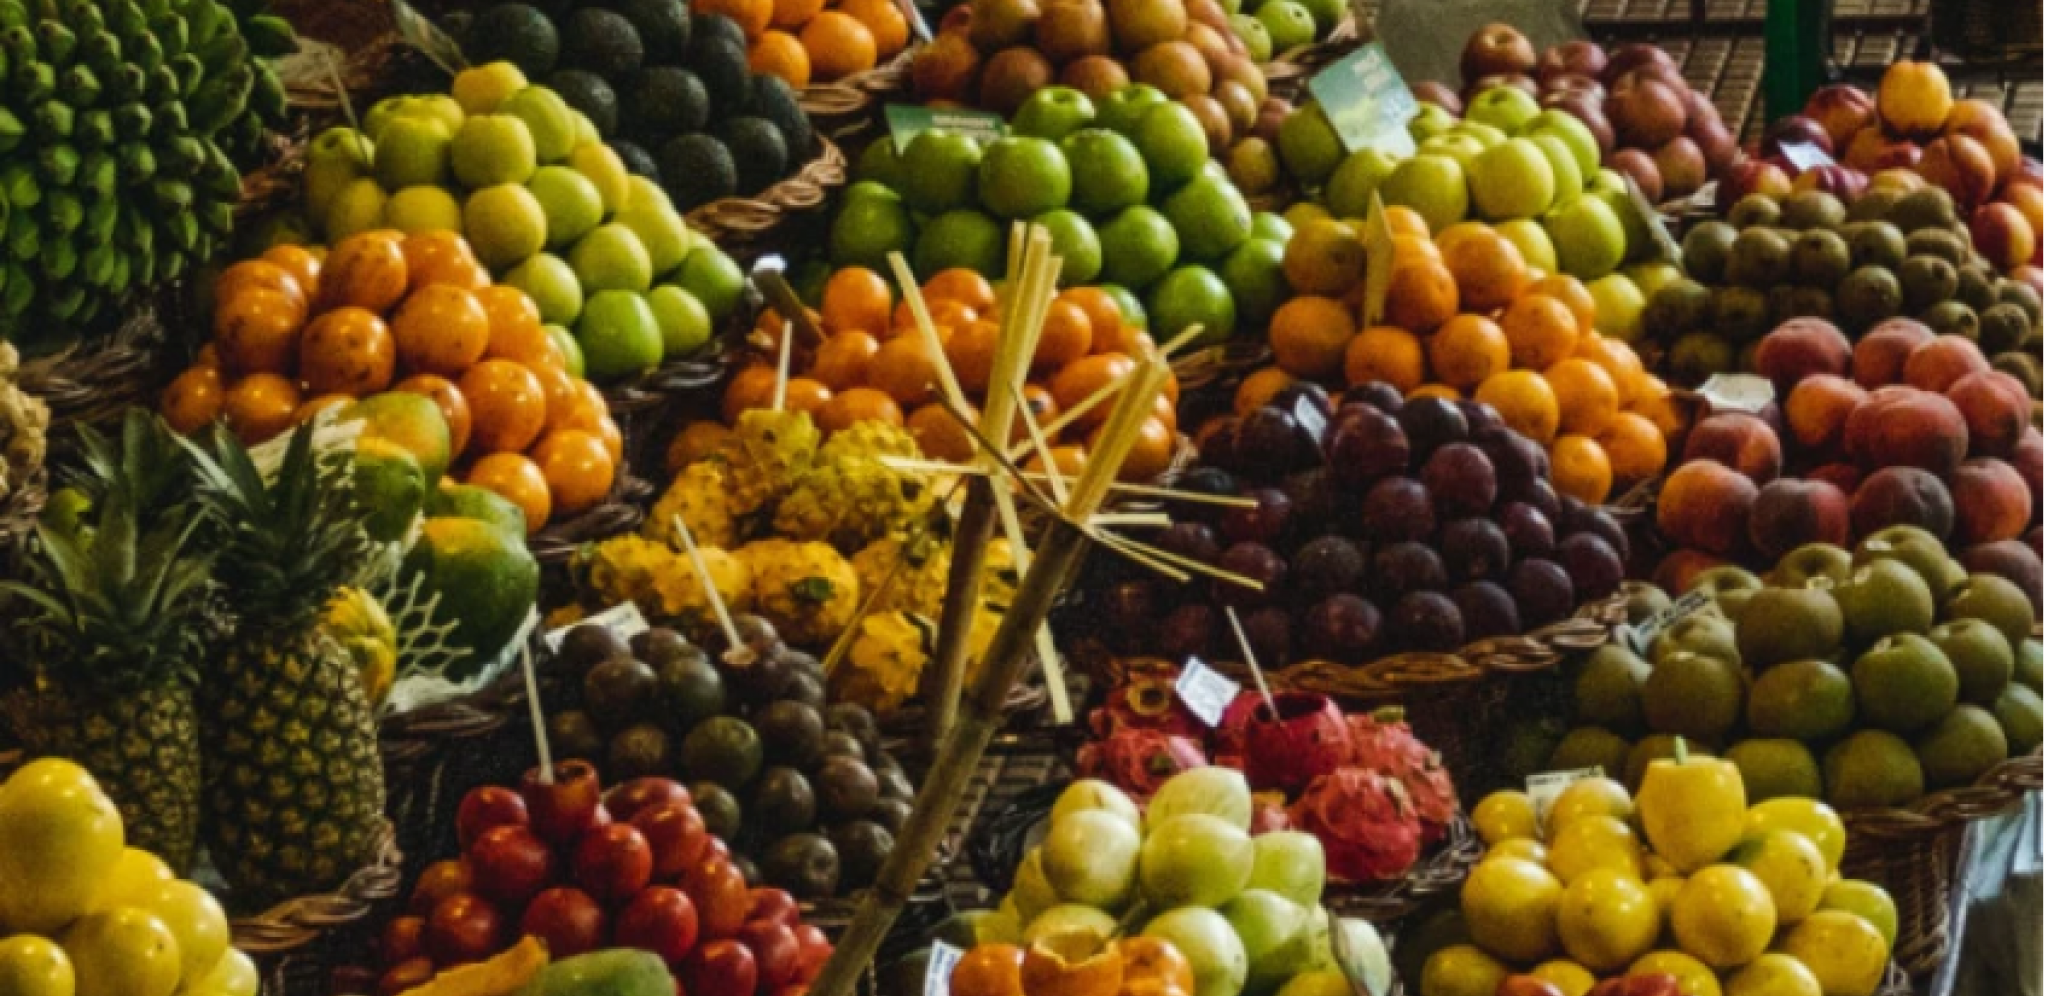 PLAĆAMO SOPSTVENU ŠTETU Voće i povrće koje sad jedemo ubija imunitet